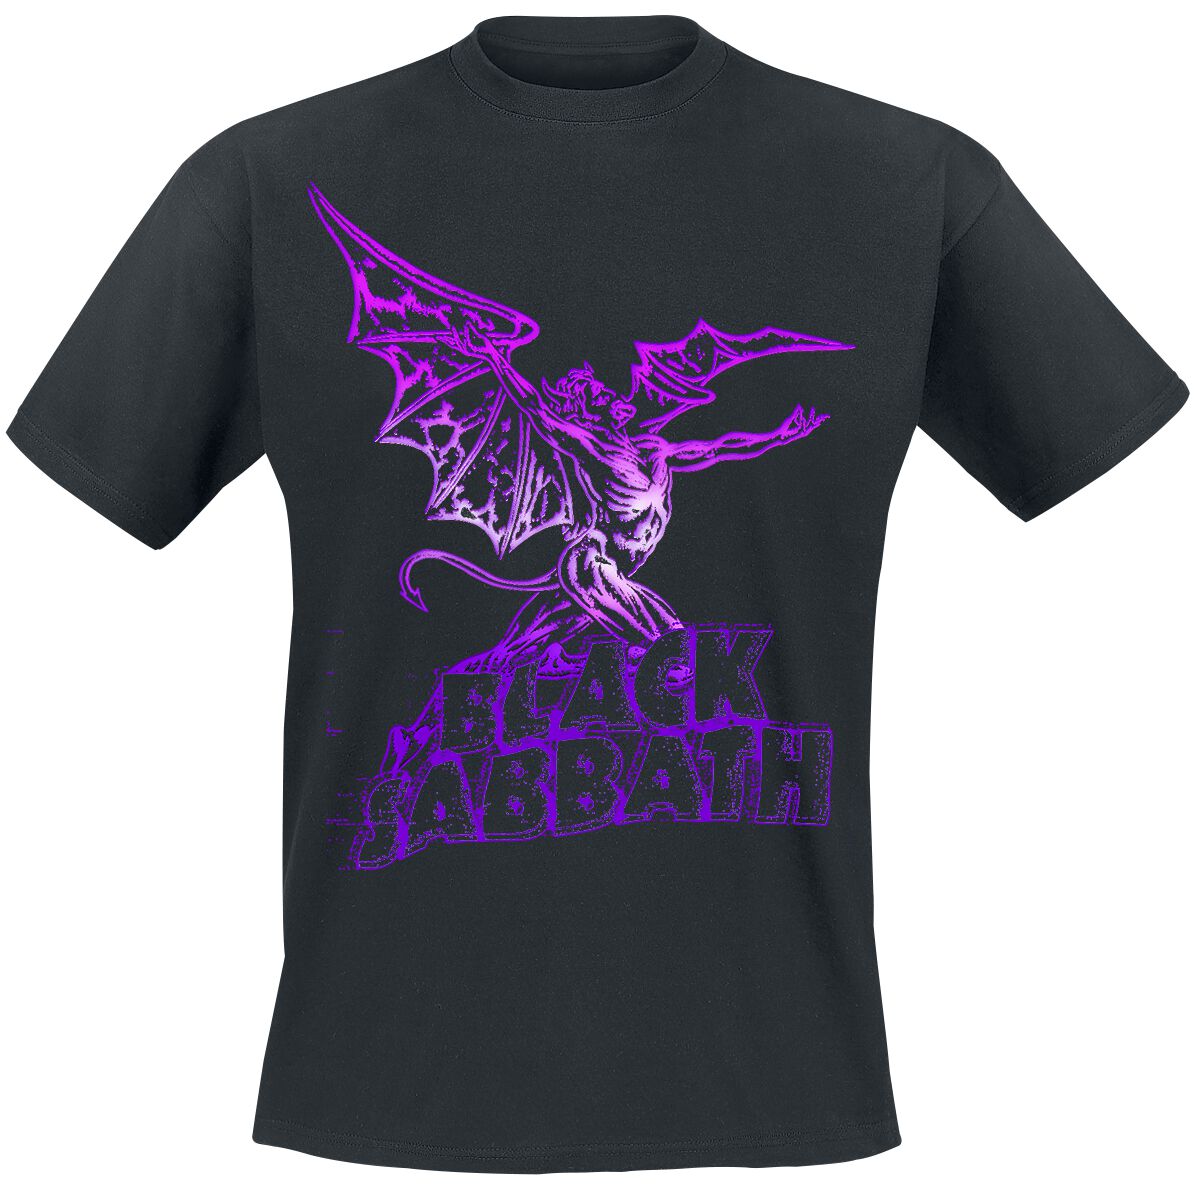 Black Sabbath T-Shirt - Gradiant Demon - S bis 3XL - für Männer - Größe S - schwarz  - Lizenziertes Merchandise!